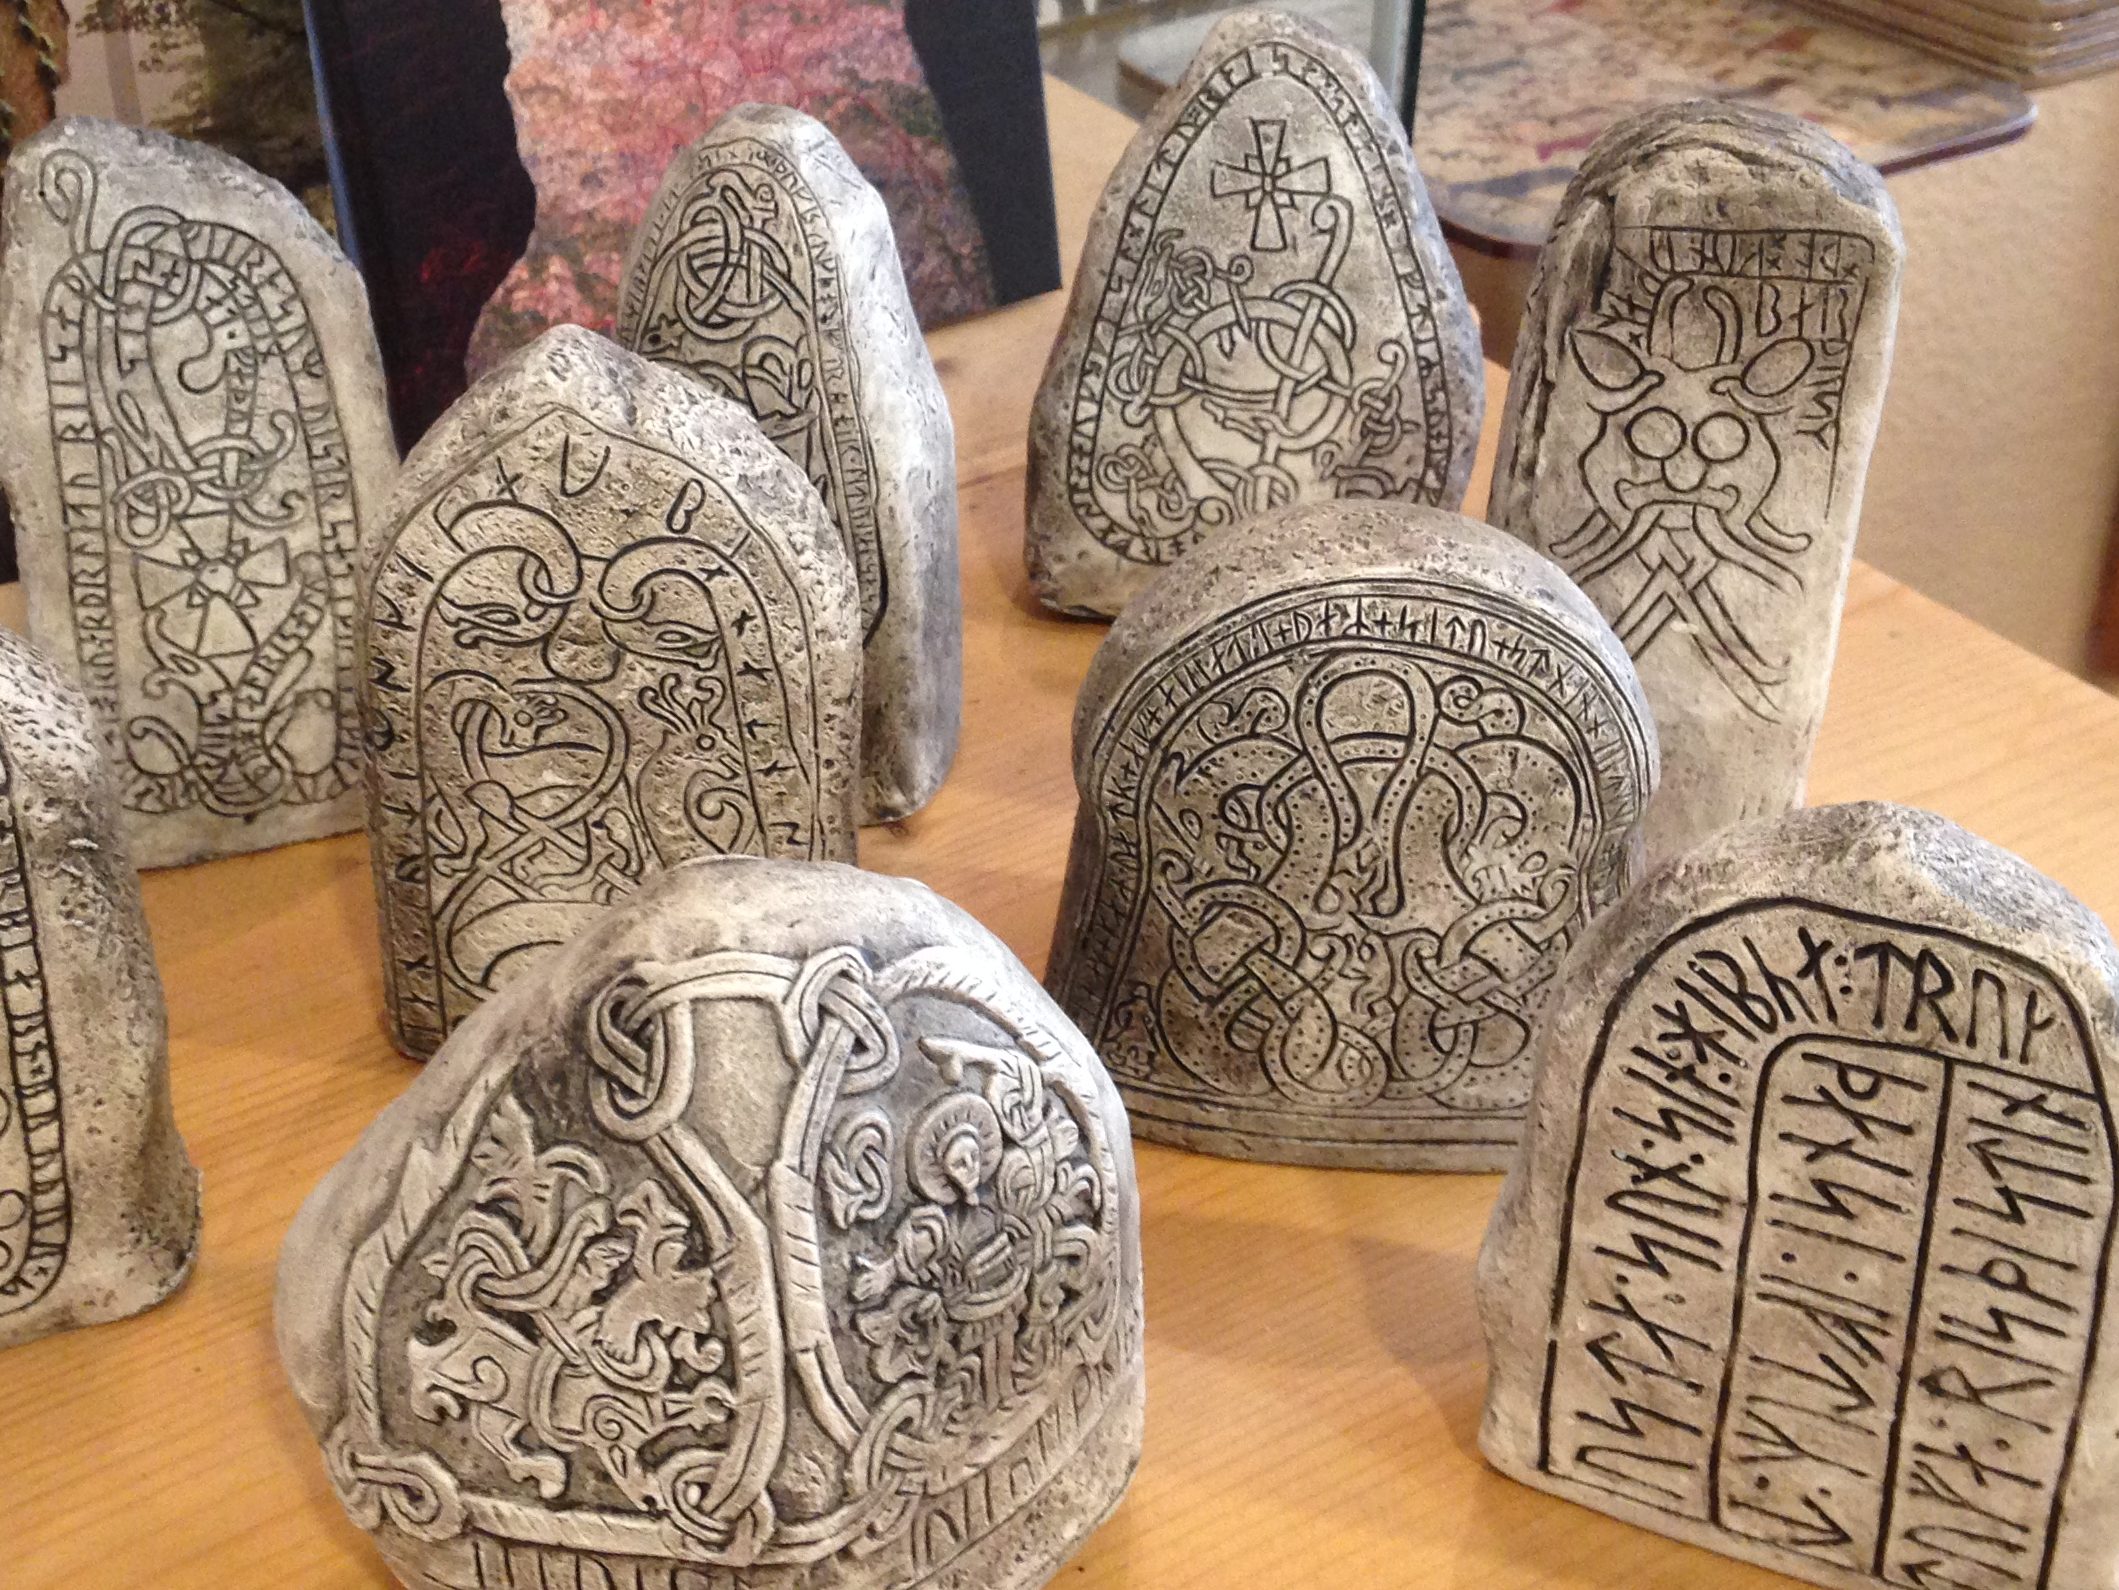 Einige Runensteine in Handflächengröße, allesamt Kopien von großen Steinen  mit Runenschrift aus der Wikingerzeit.